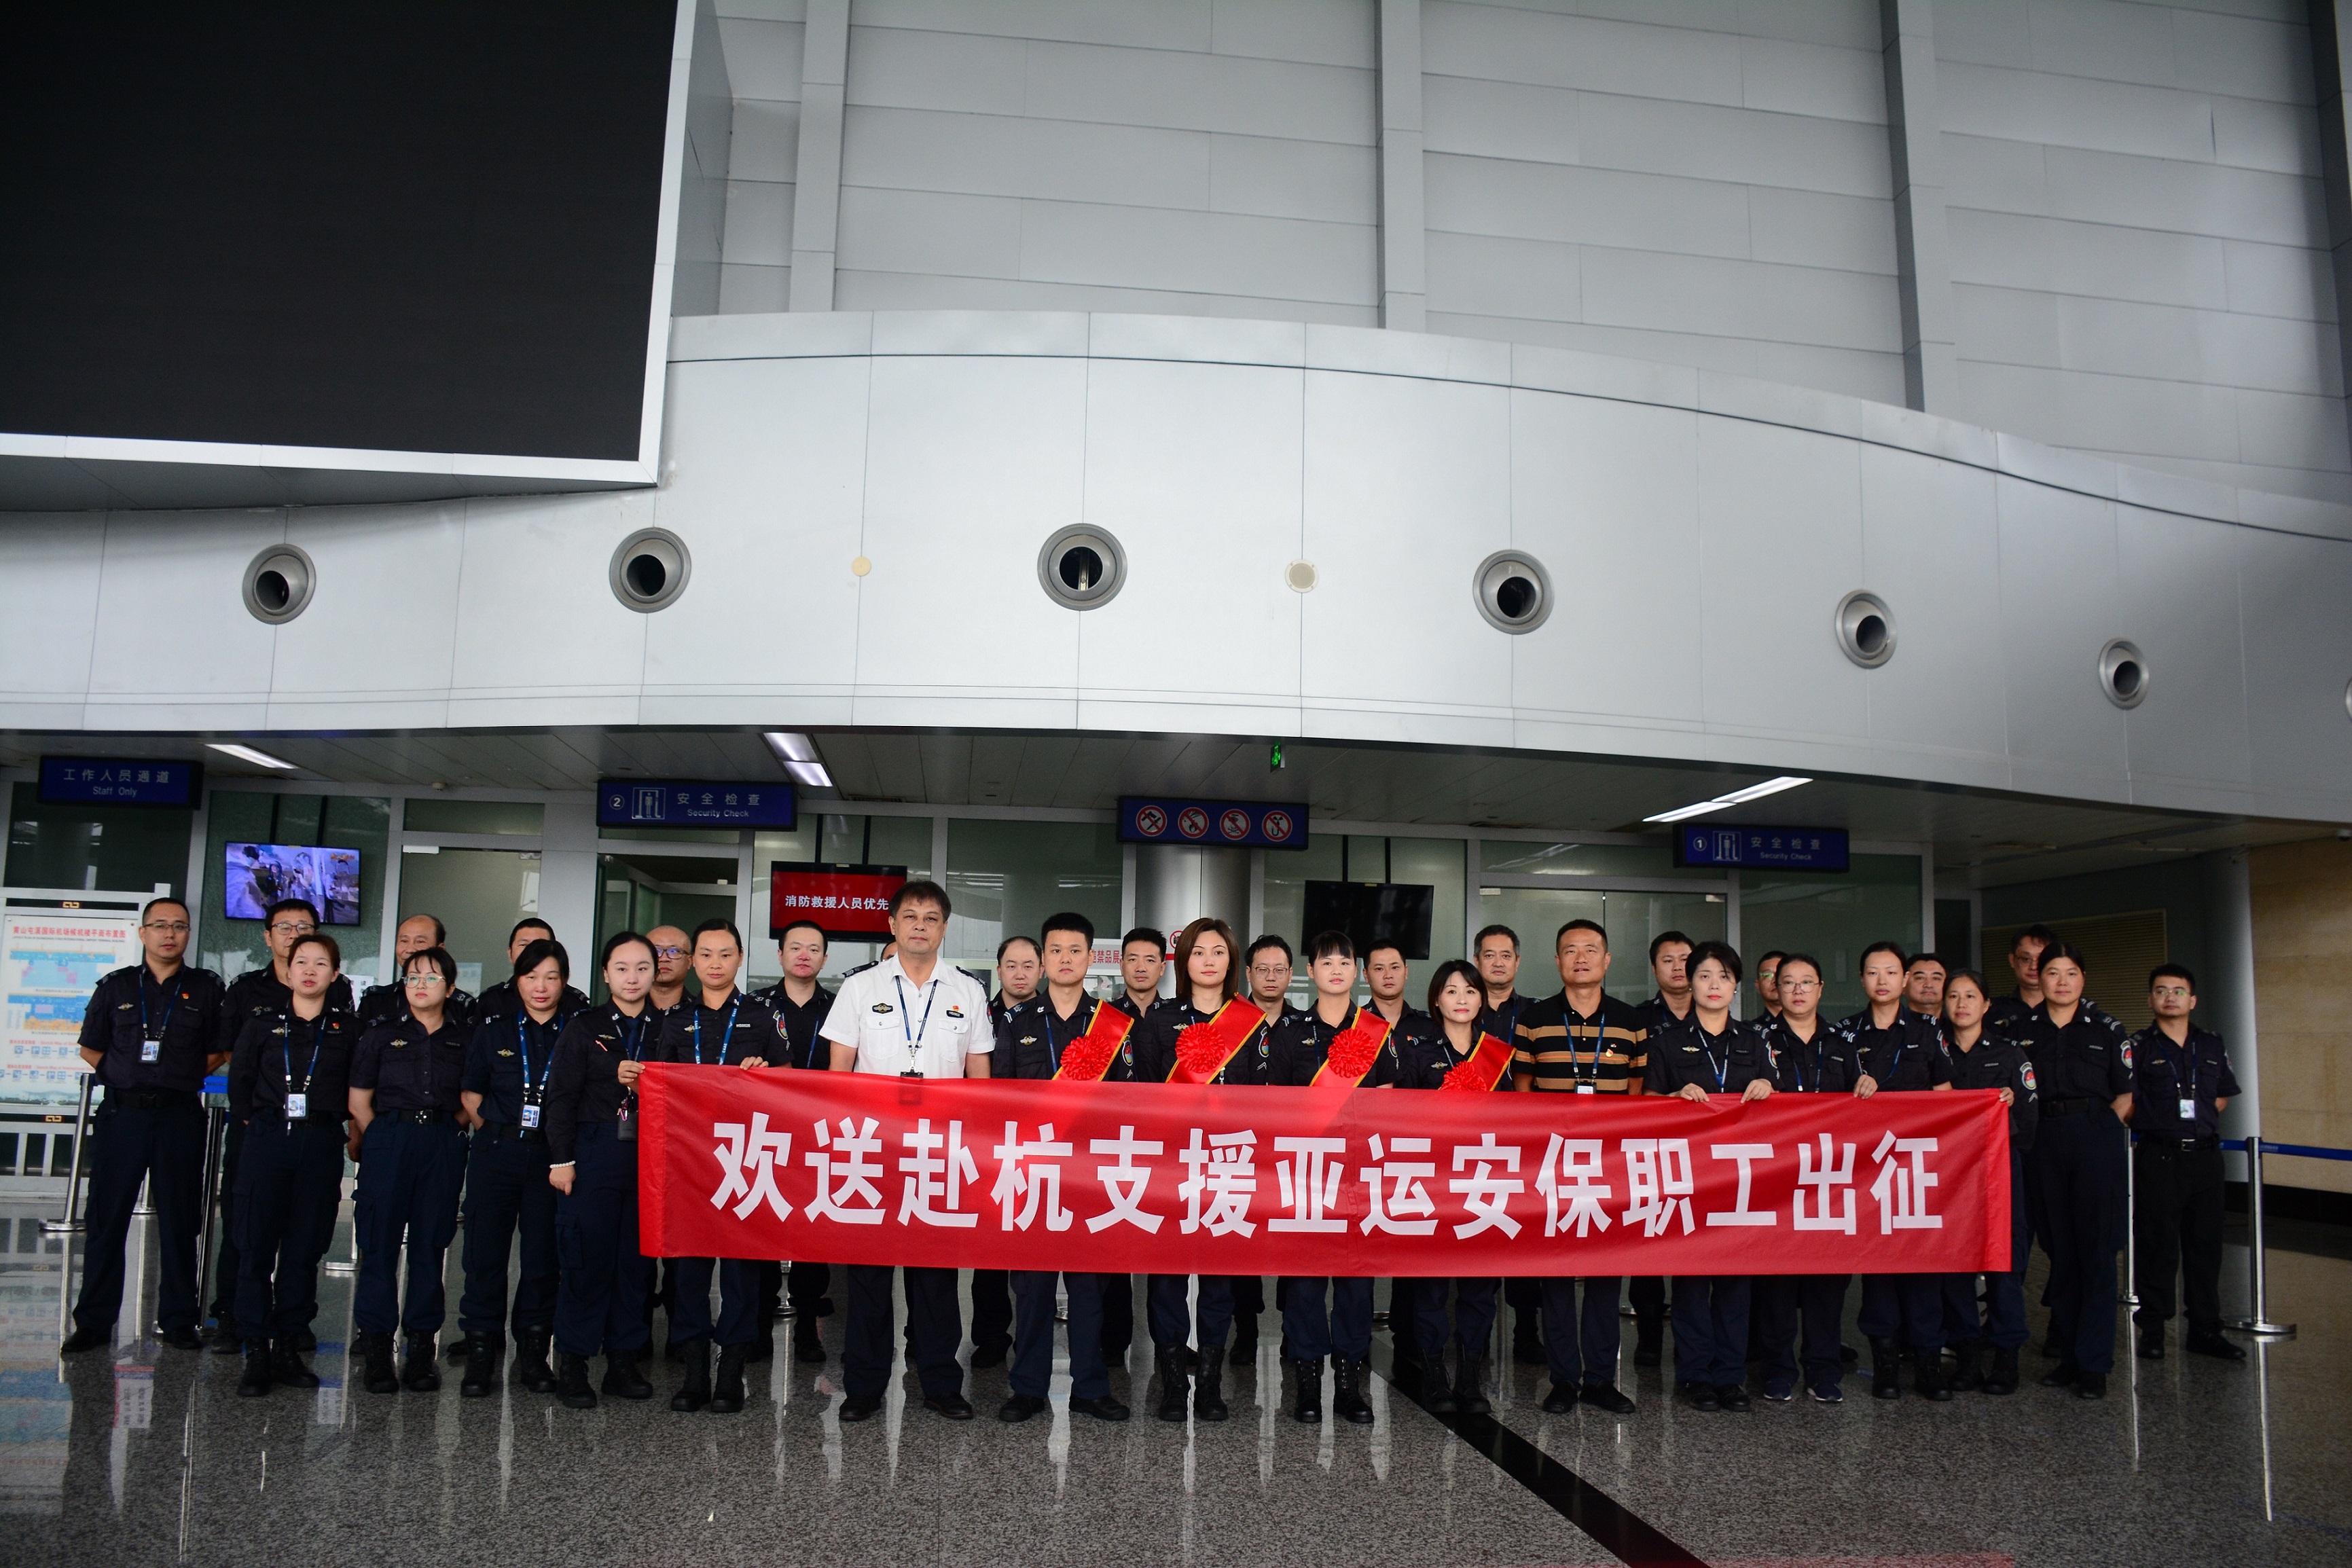 黄山机场举办出征仪式欢送赴杭州支援亚运安保职工